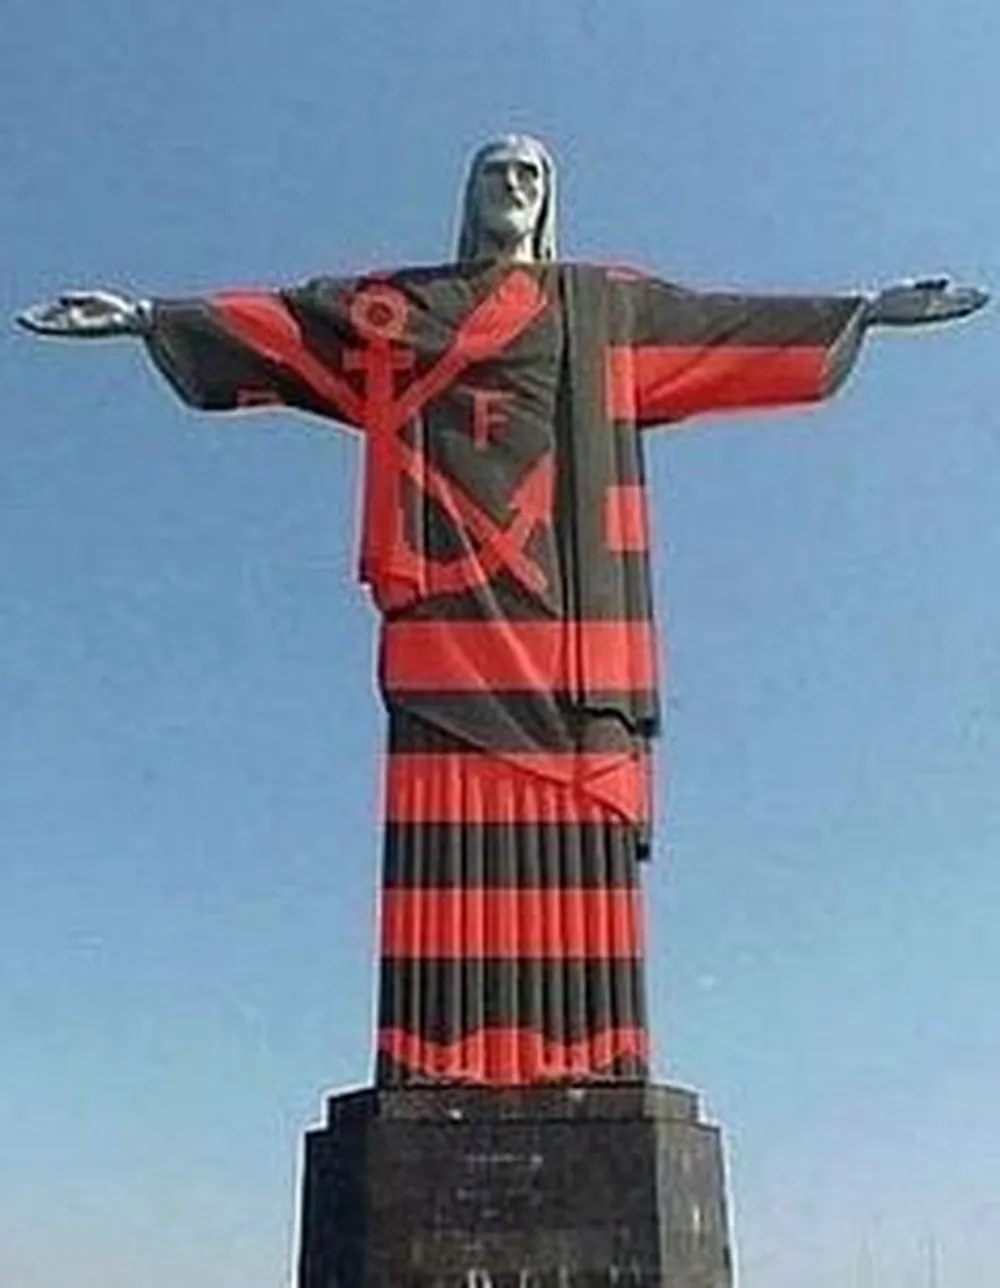 Flamengo Campeao libertadores